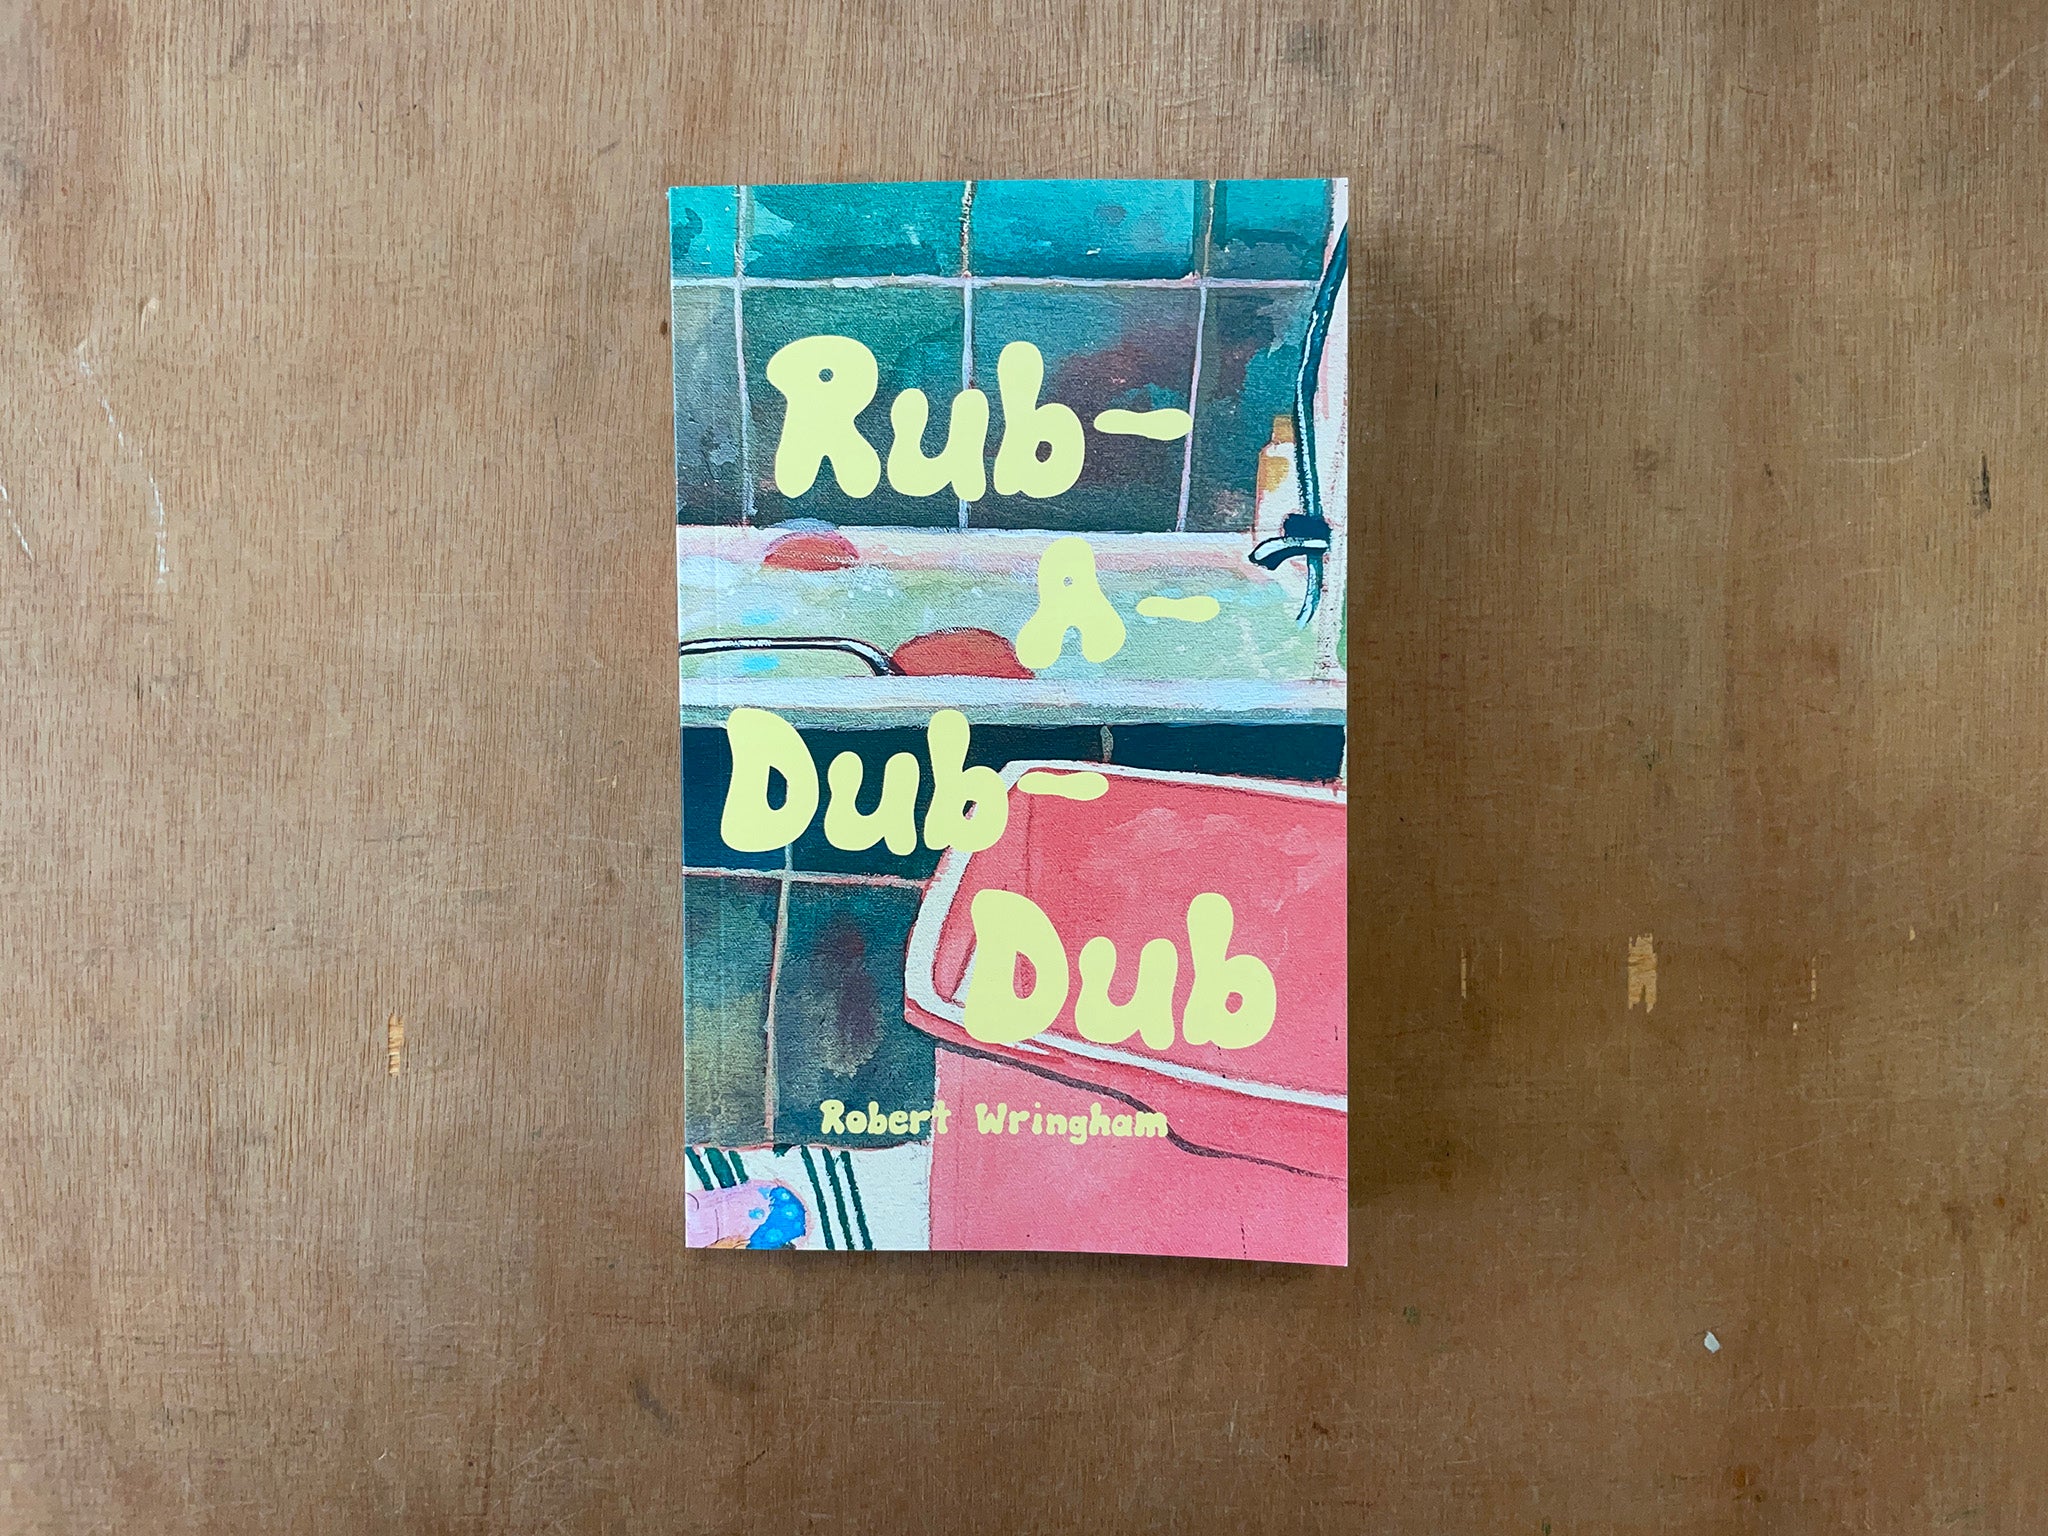 RUB-A-DUB-DUB by Robert Wringham